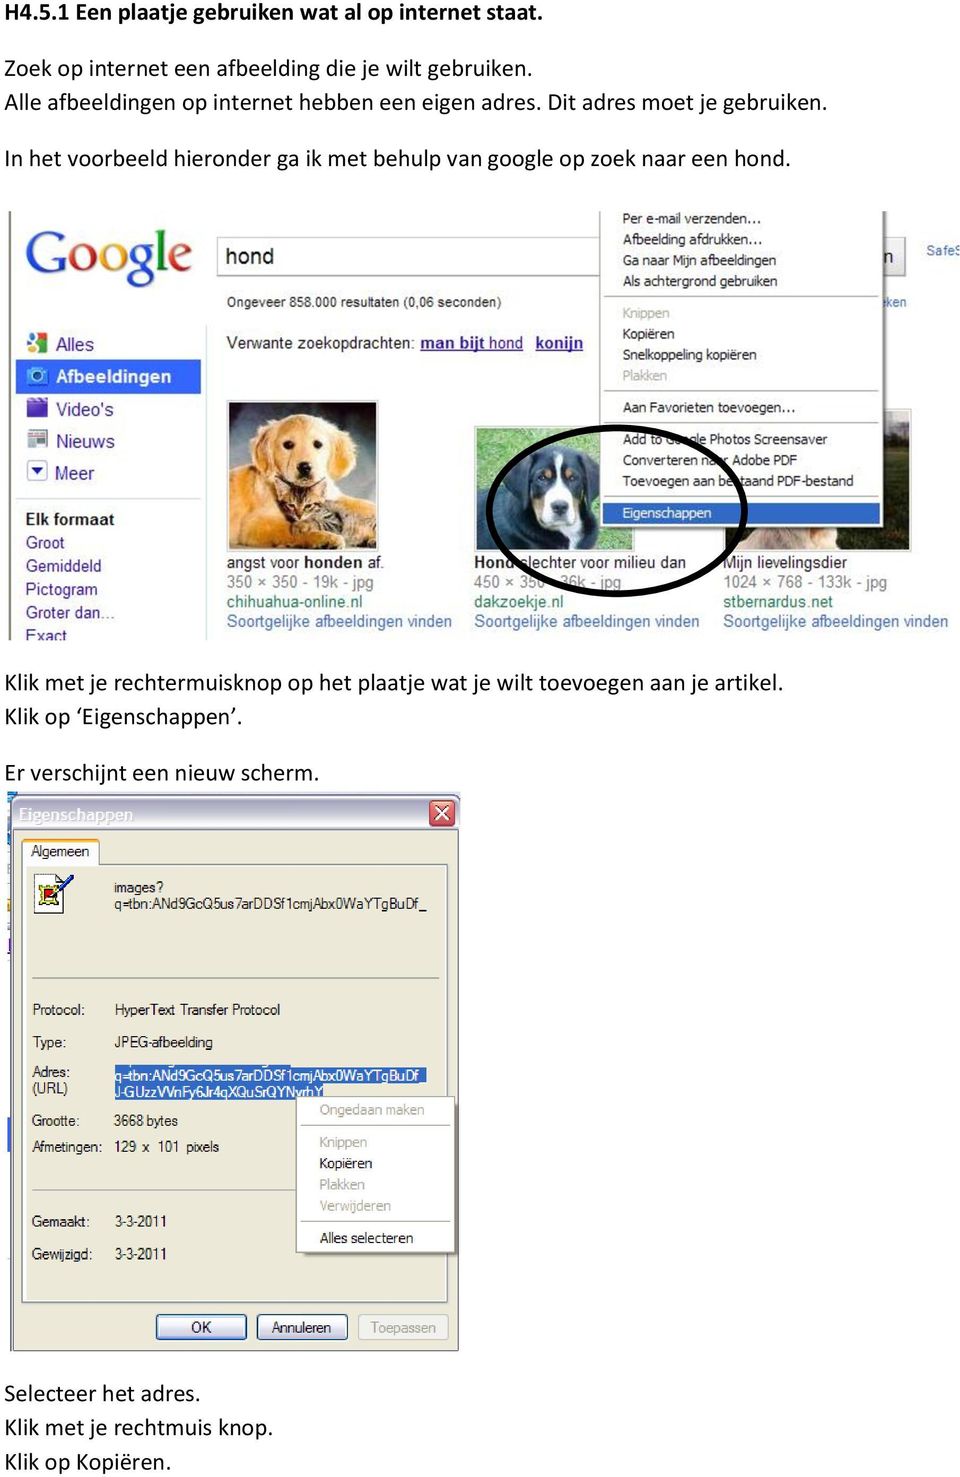 In het voorbeeld hieronder ga ik met behulp van google op zoek naar een hond.